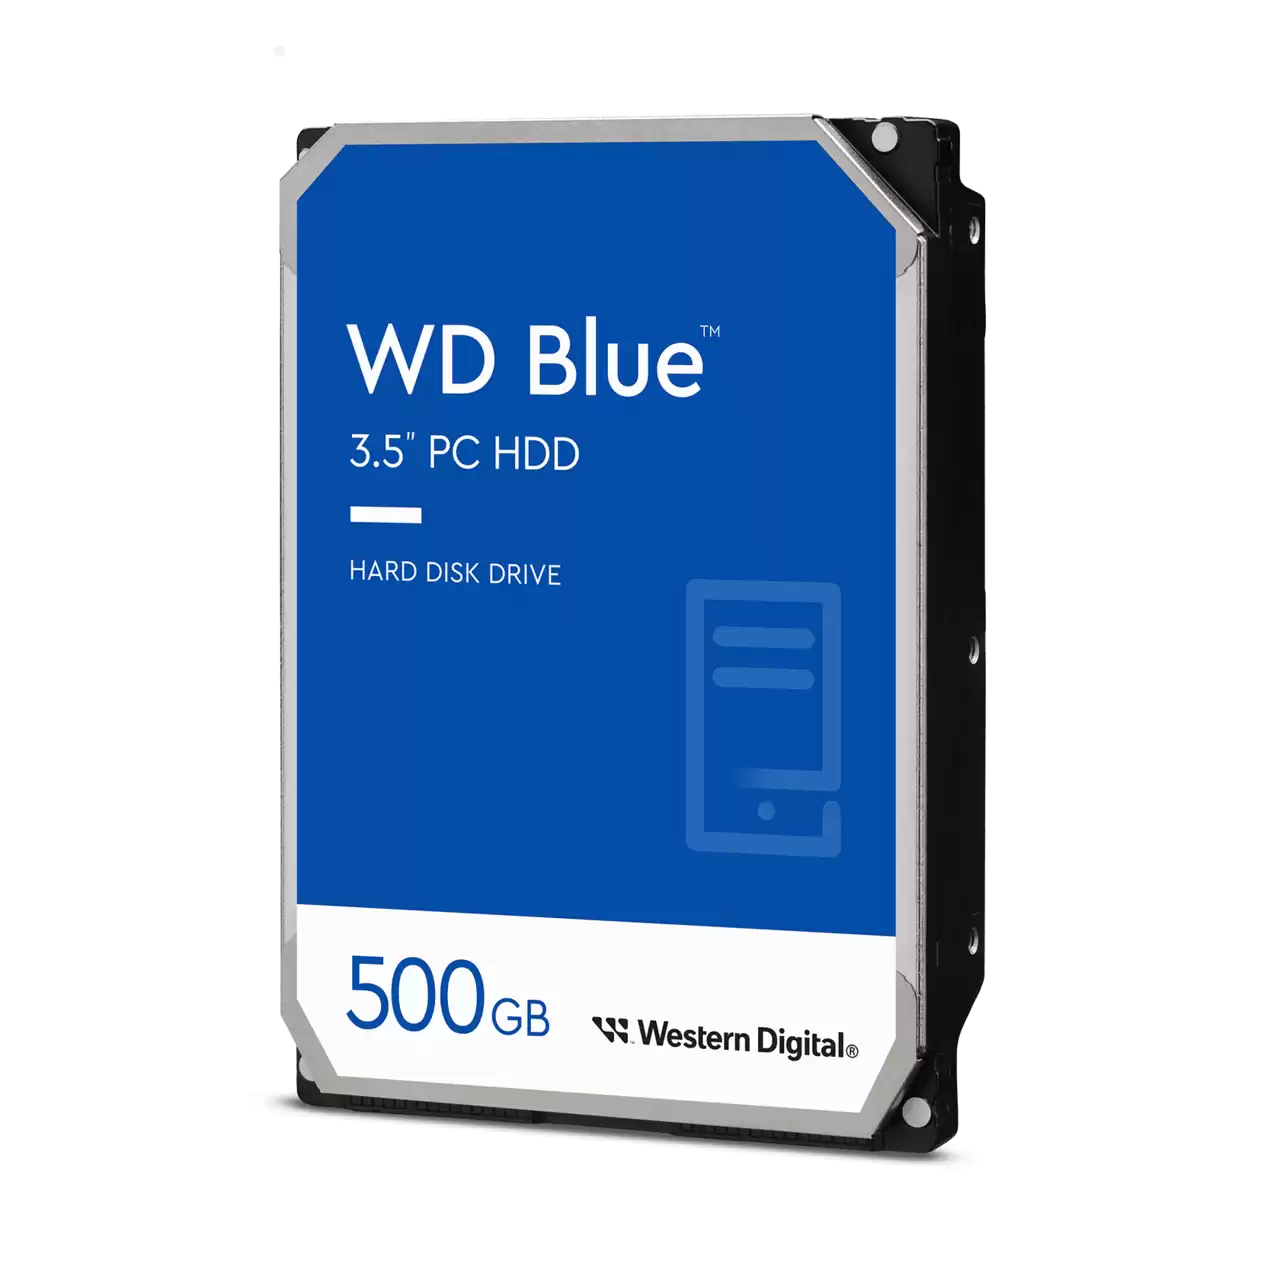 WD Blue PC Desktop Hard Drive - 500GB - 3.5 SATA - WD5000AZLX